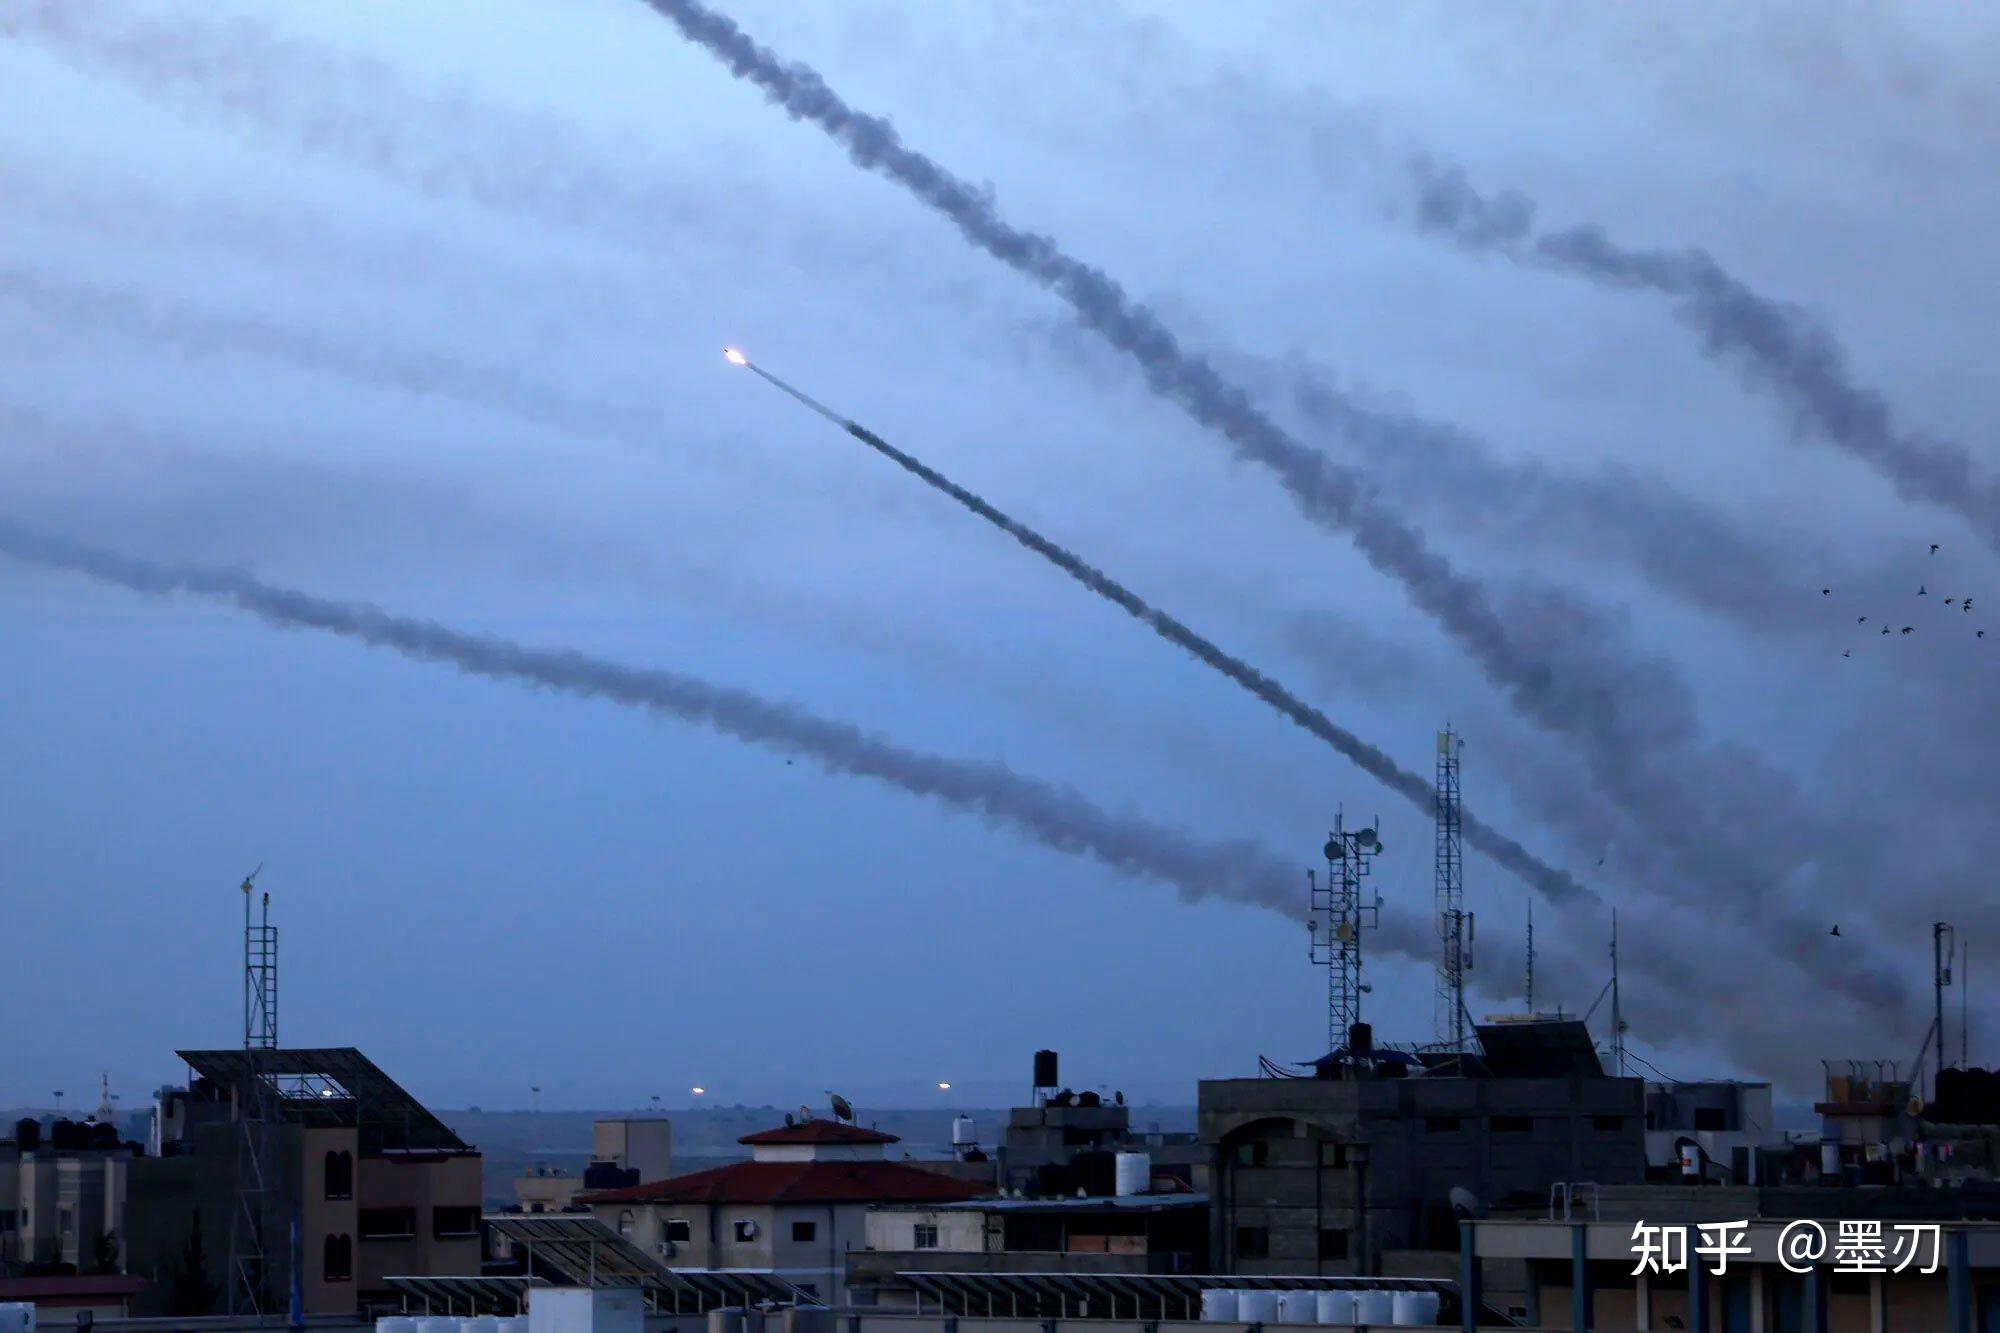 哈马斯硬刚以色列,搞得以军丢盔卸甲,这会是第六次中东战争吗?